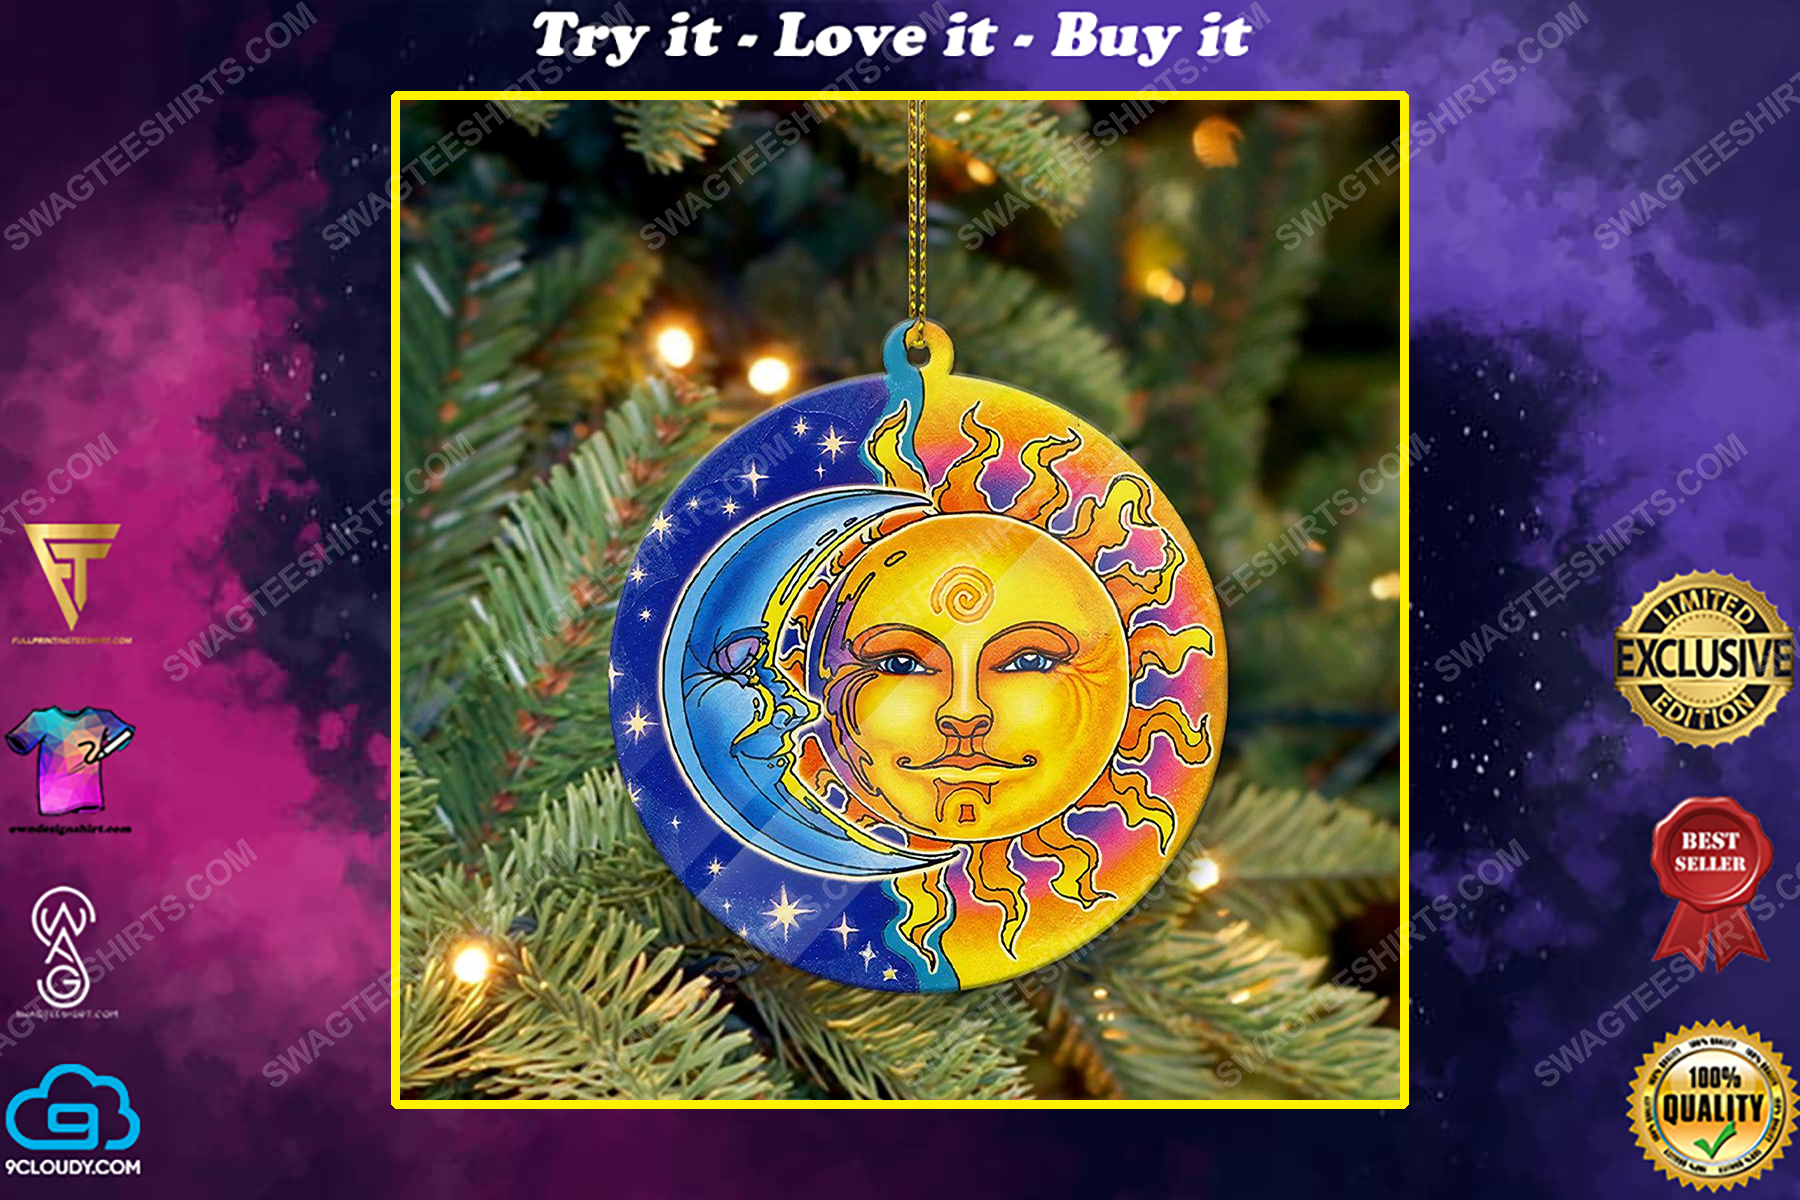 Sun and moon christmas gift ornament